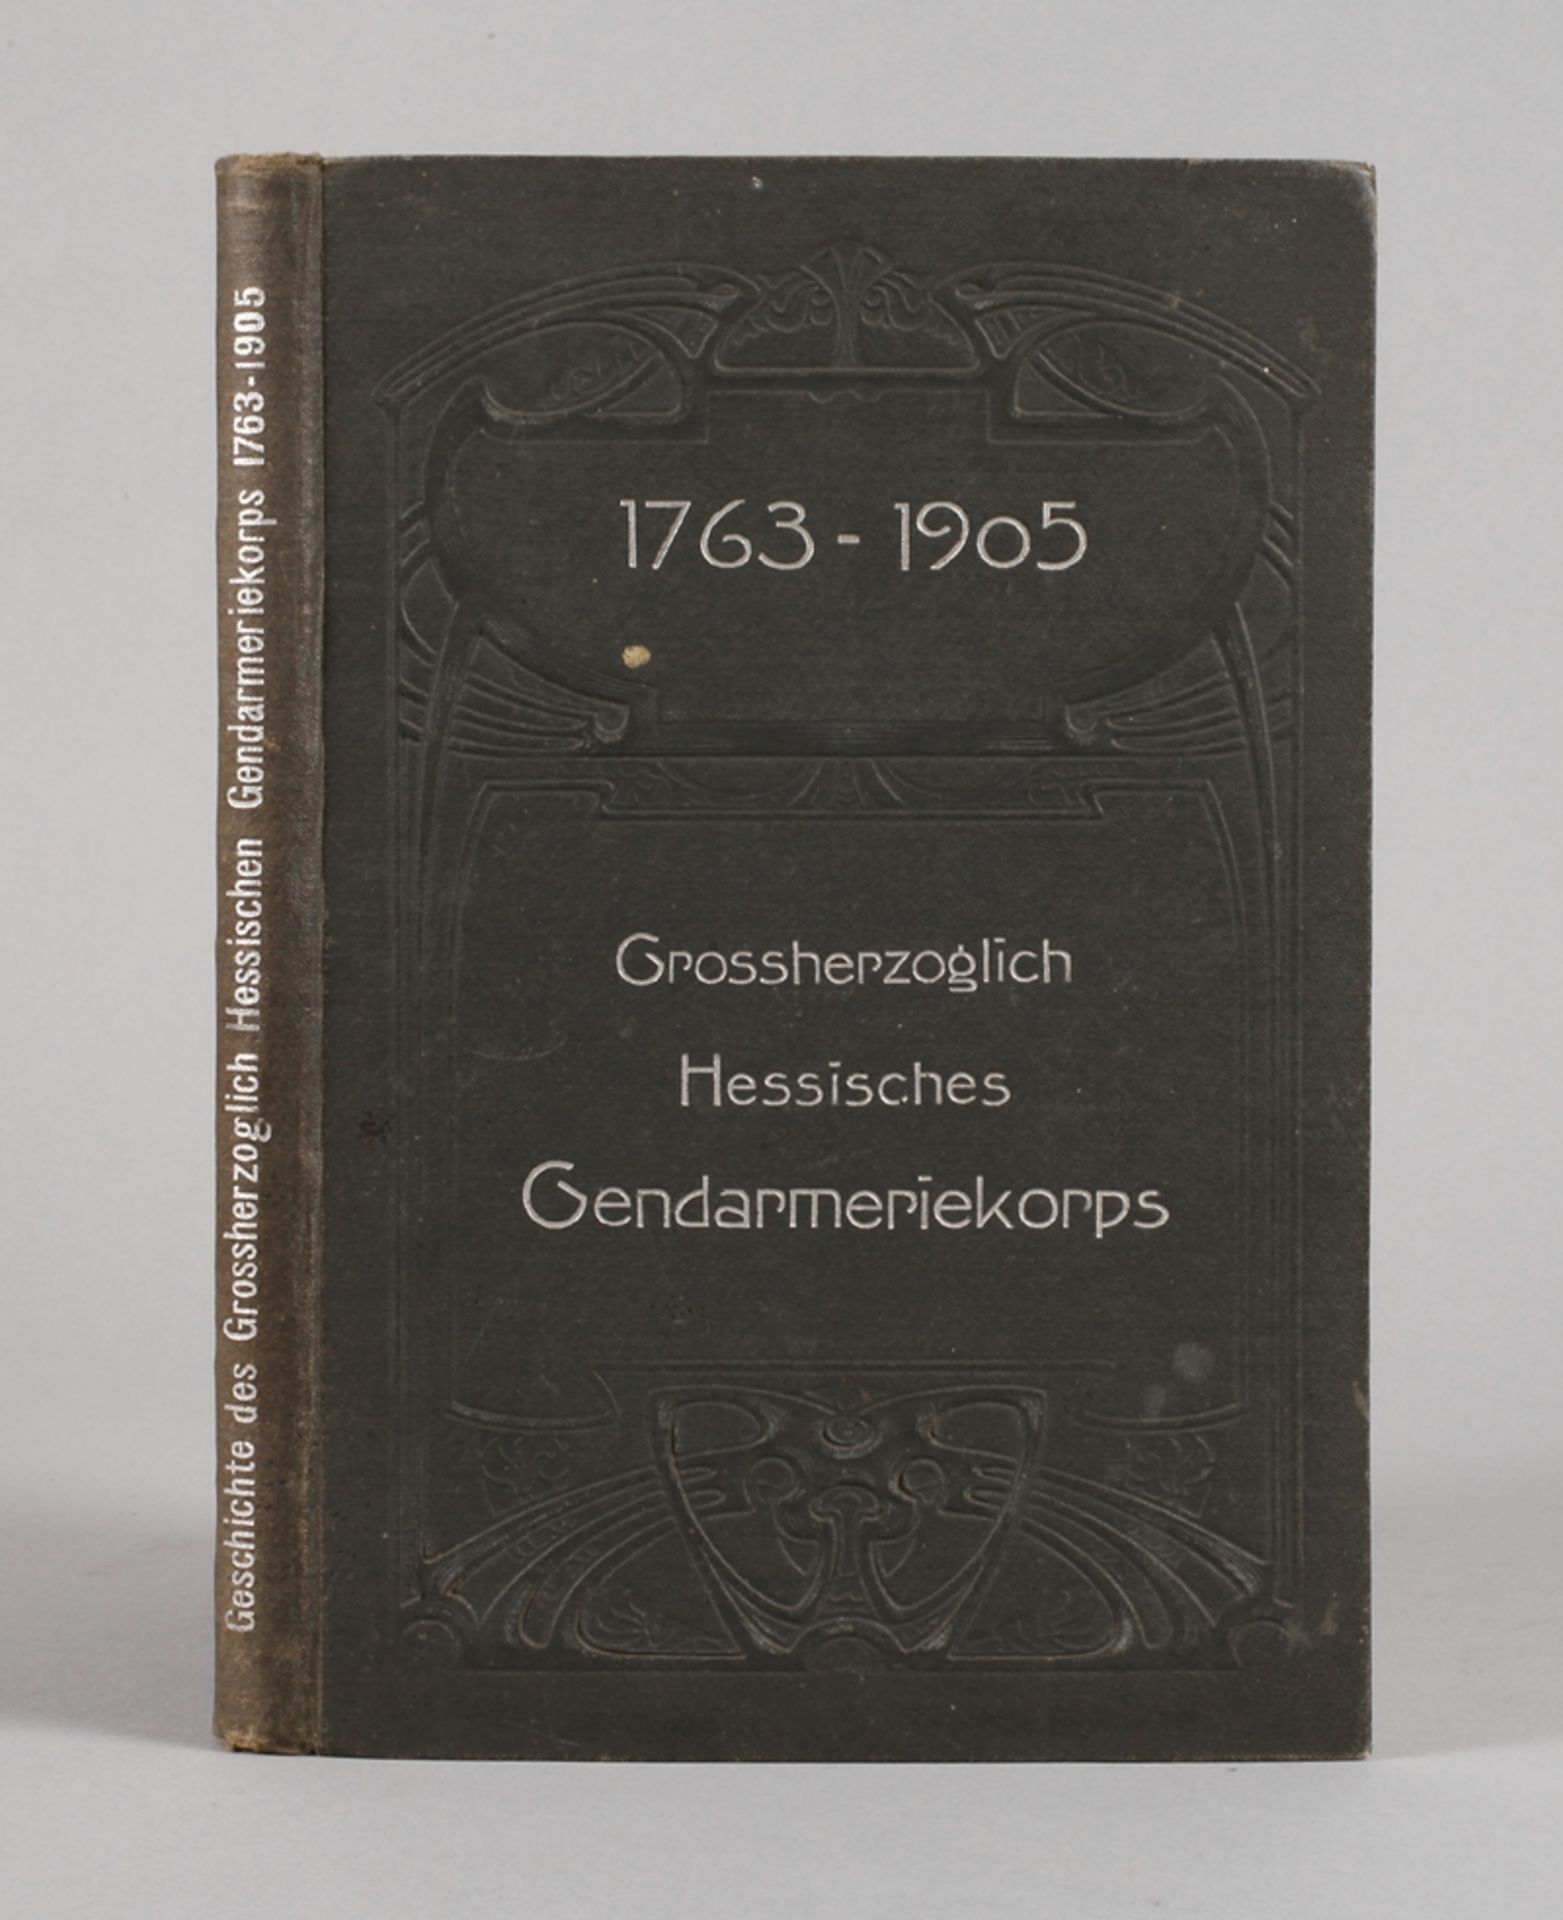 Geschichte des Großherzoglich Hessischen Gendarmeriekorps1763-1905, auf Grund offizieller